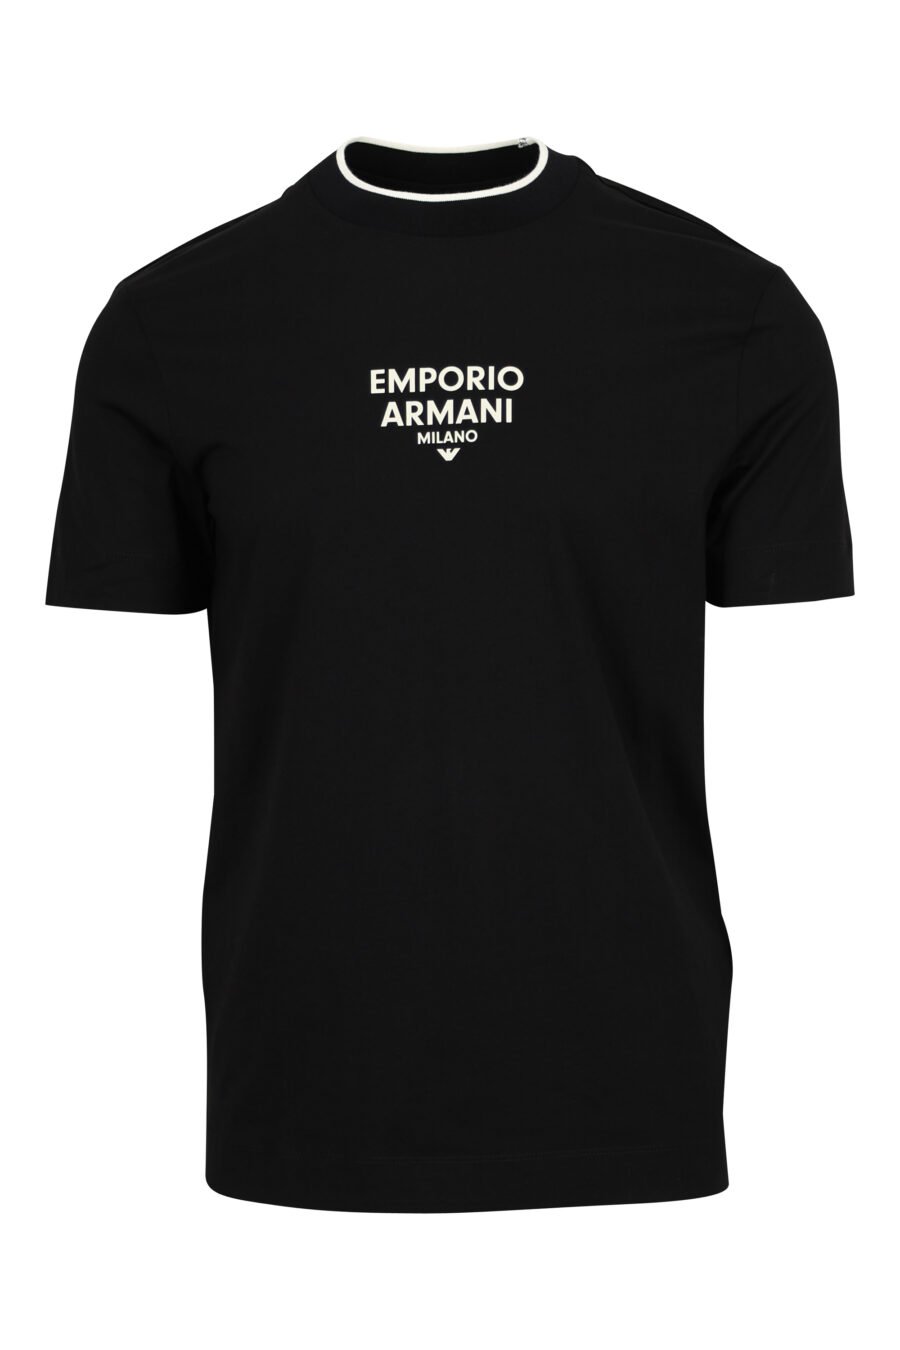 Camiseta negra con minilogo "emporio" centrado - 8058947990740